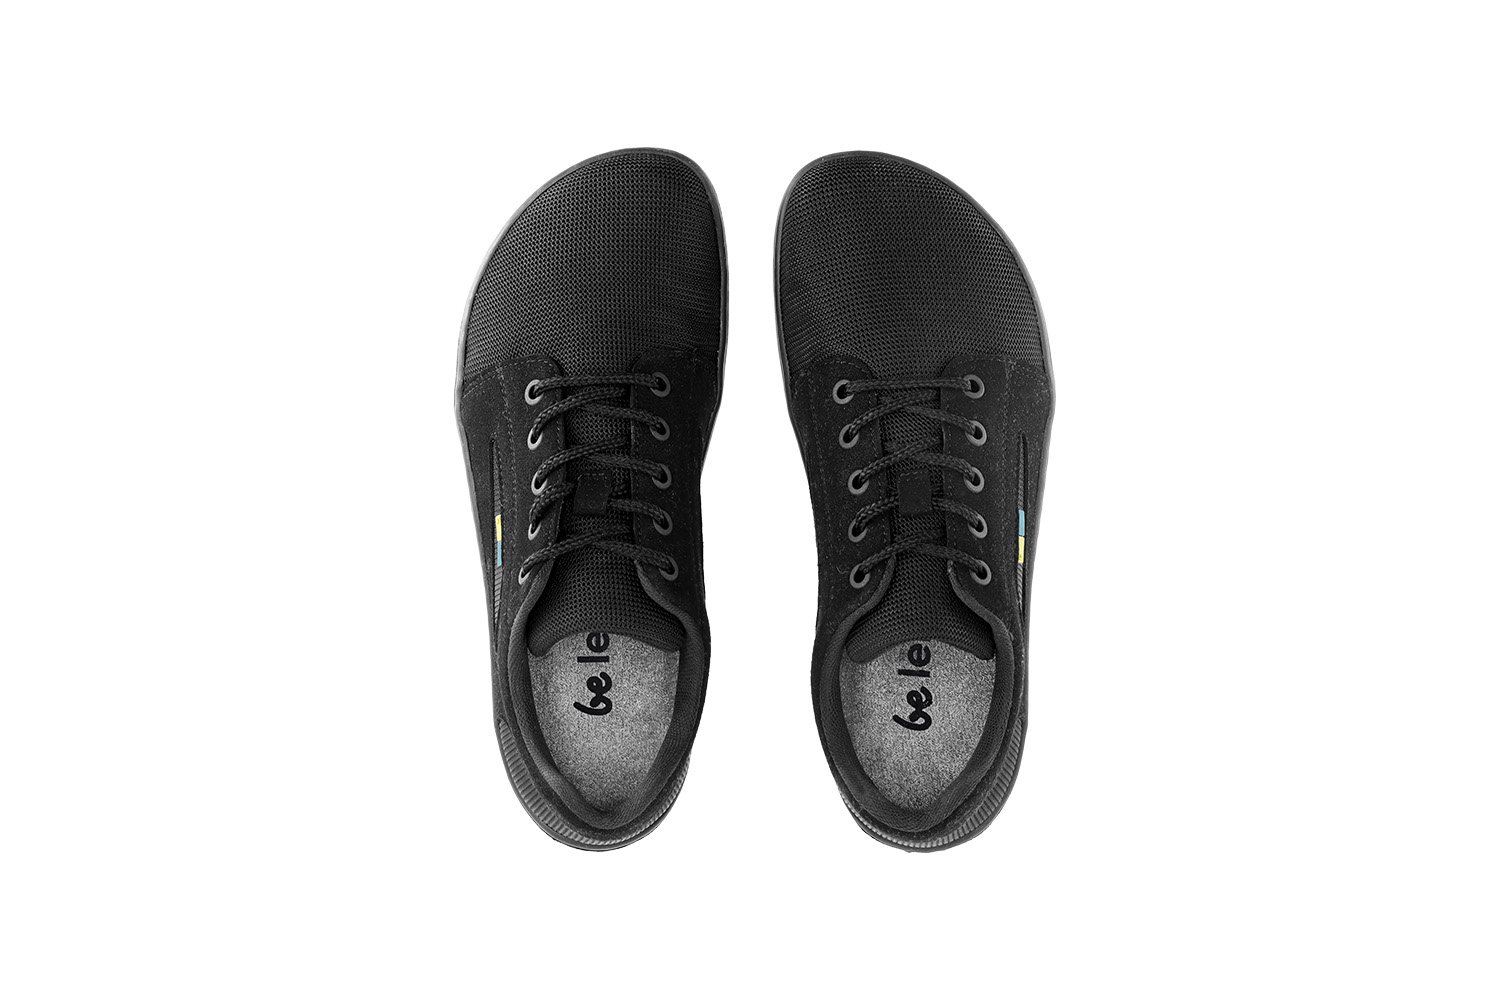 Barefoot Sneakers - Be Lenka Whiz - All Black | Be Lenka